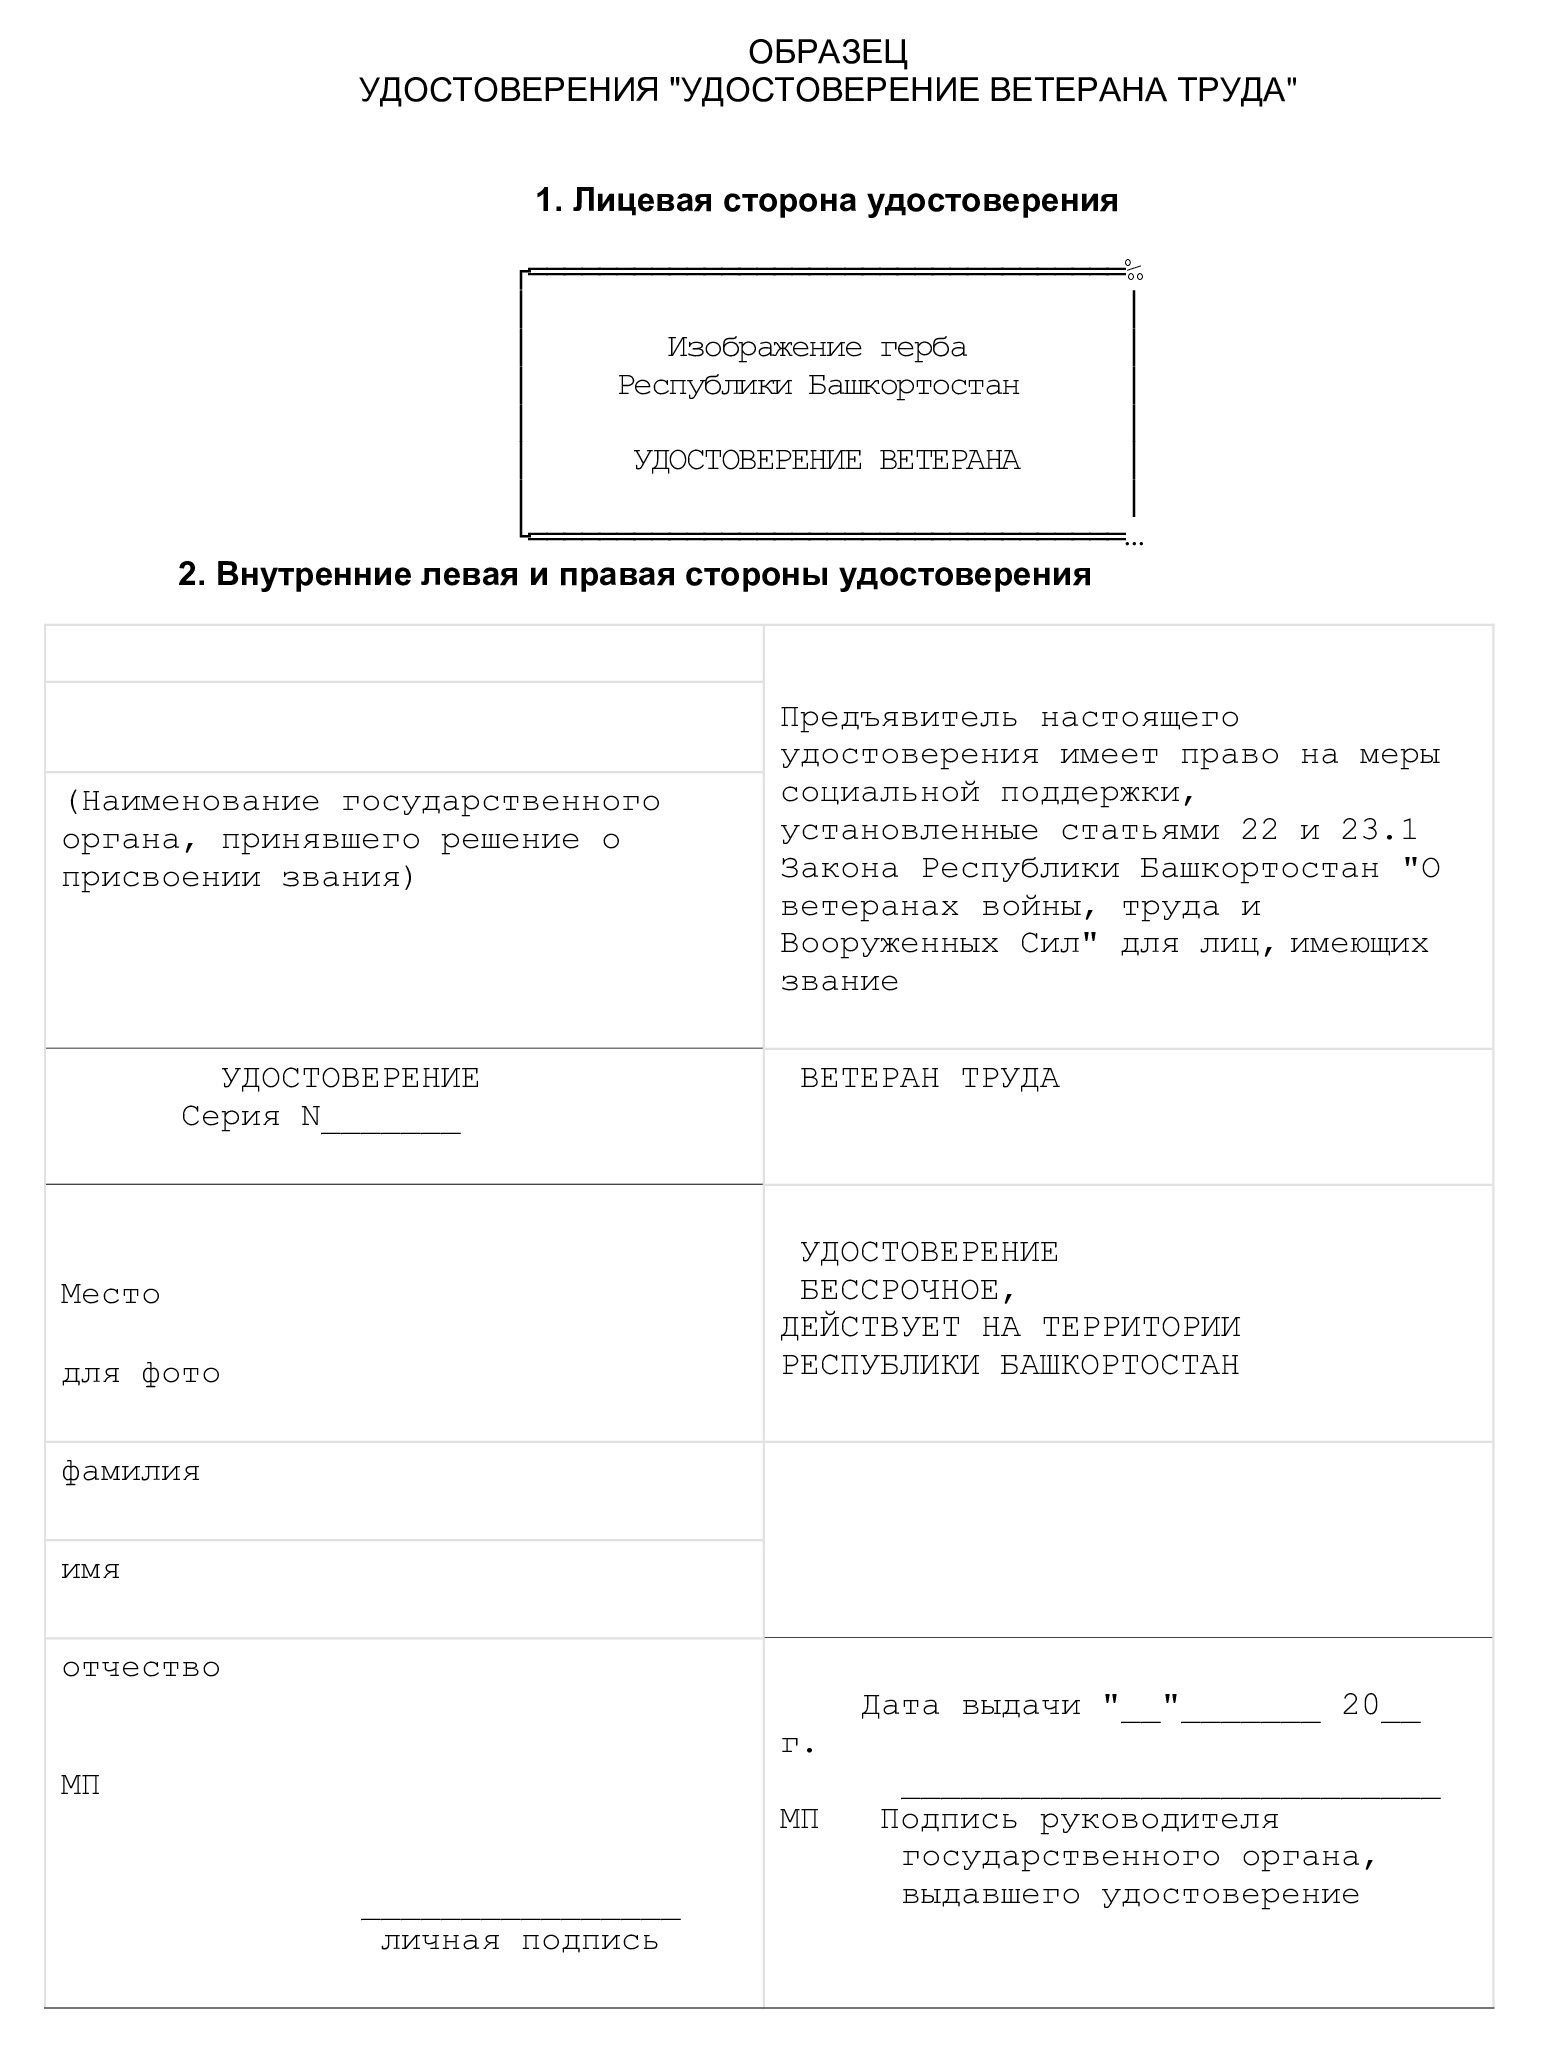 Образец удостоверения «Ветеран труда Республики Башкортостан»